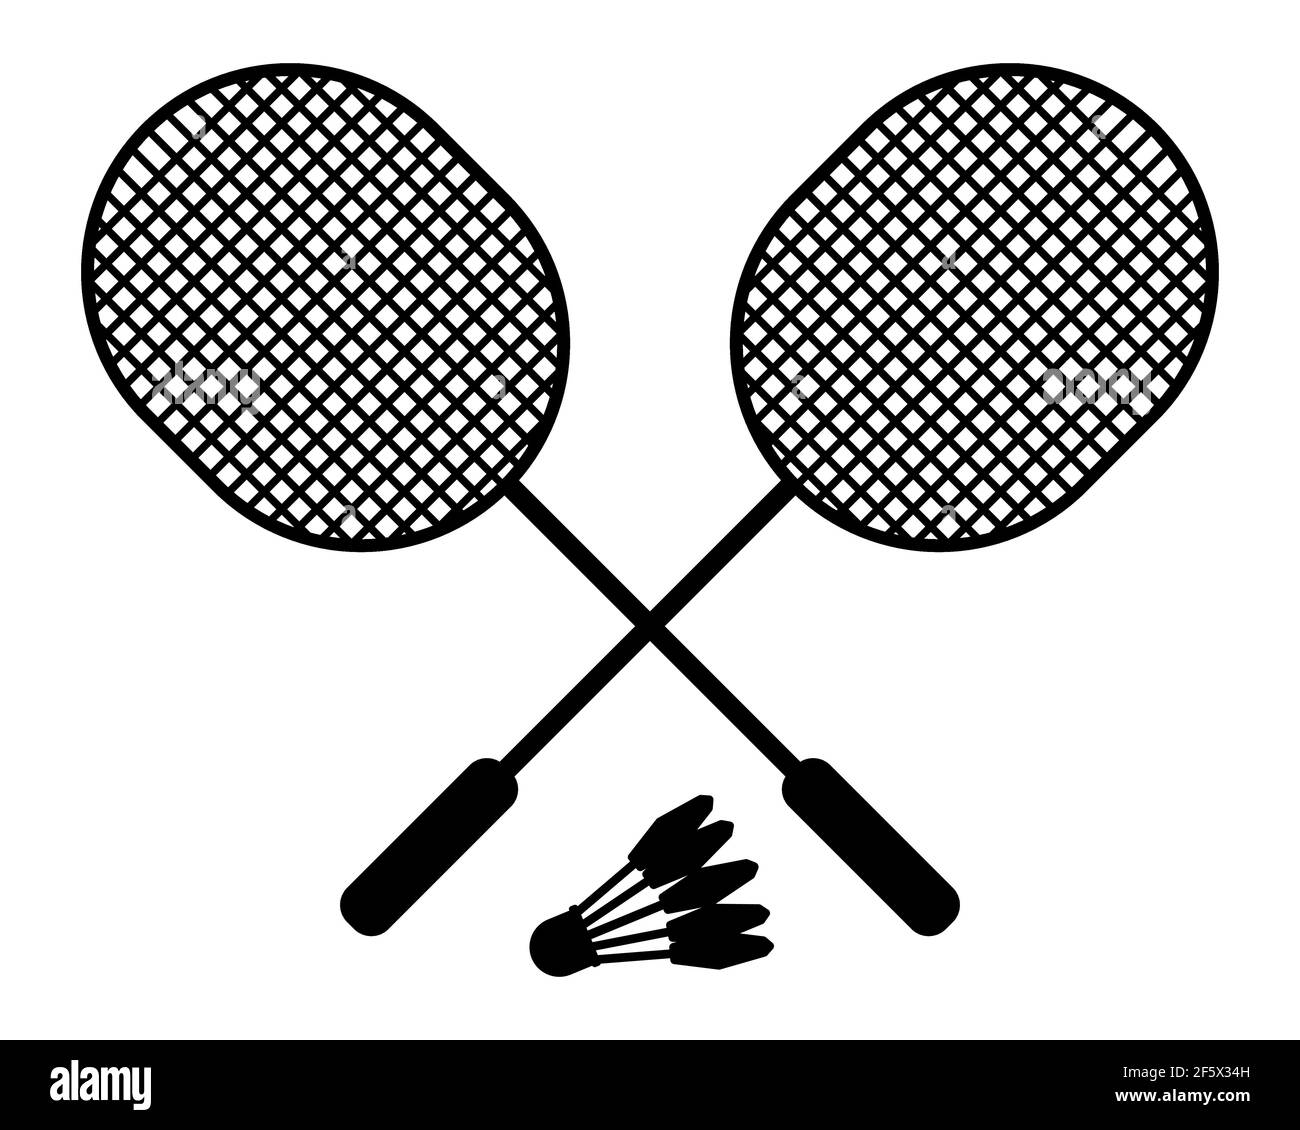 Raquettes de badminton et shuttlecock. Illustration vectorielle isolée sur fond blanc Illustration de Vecteur